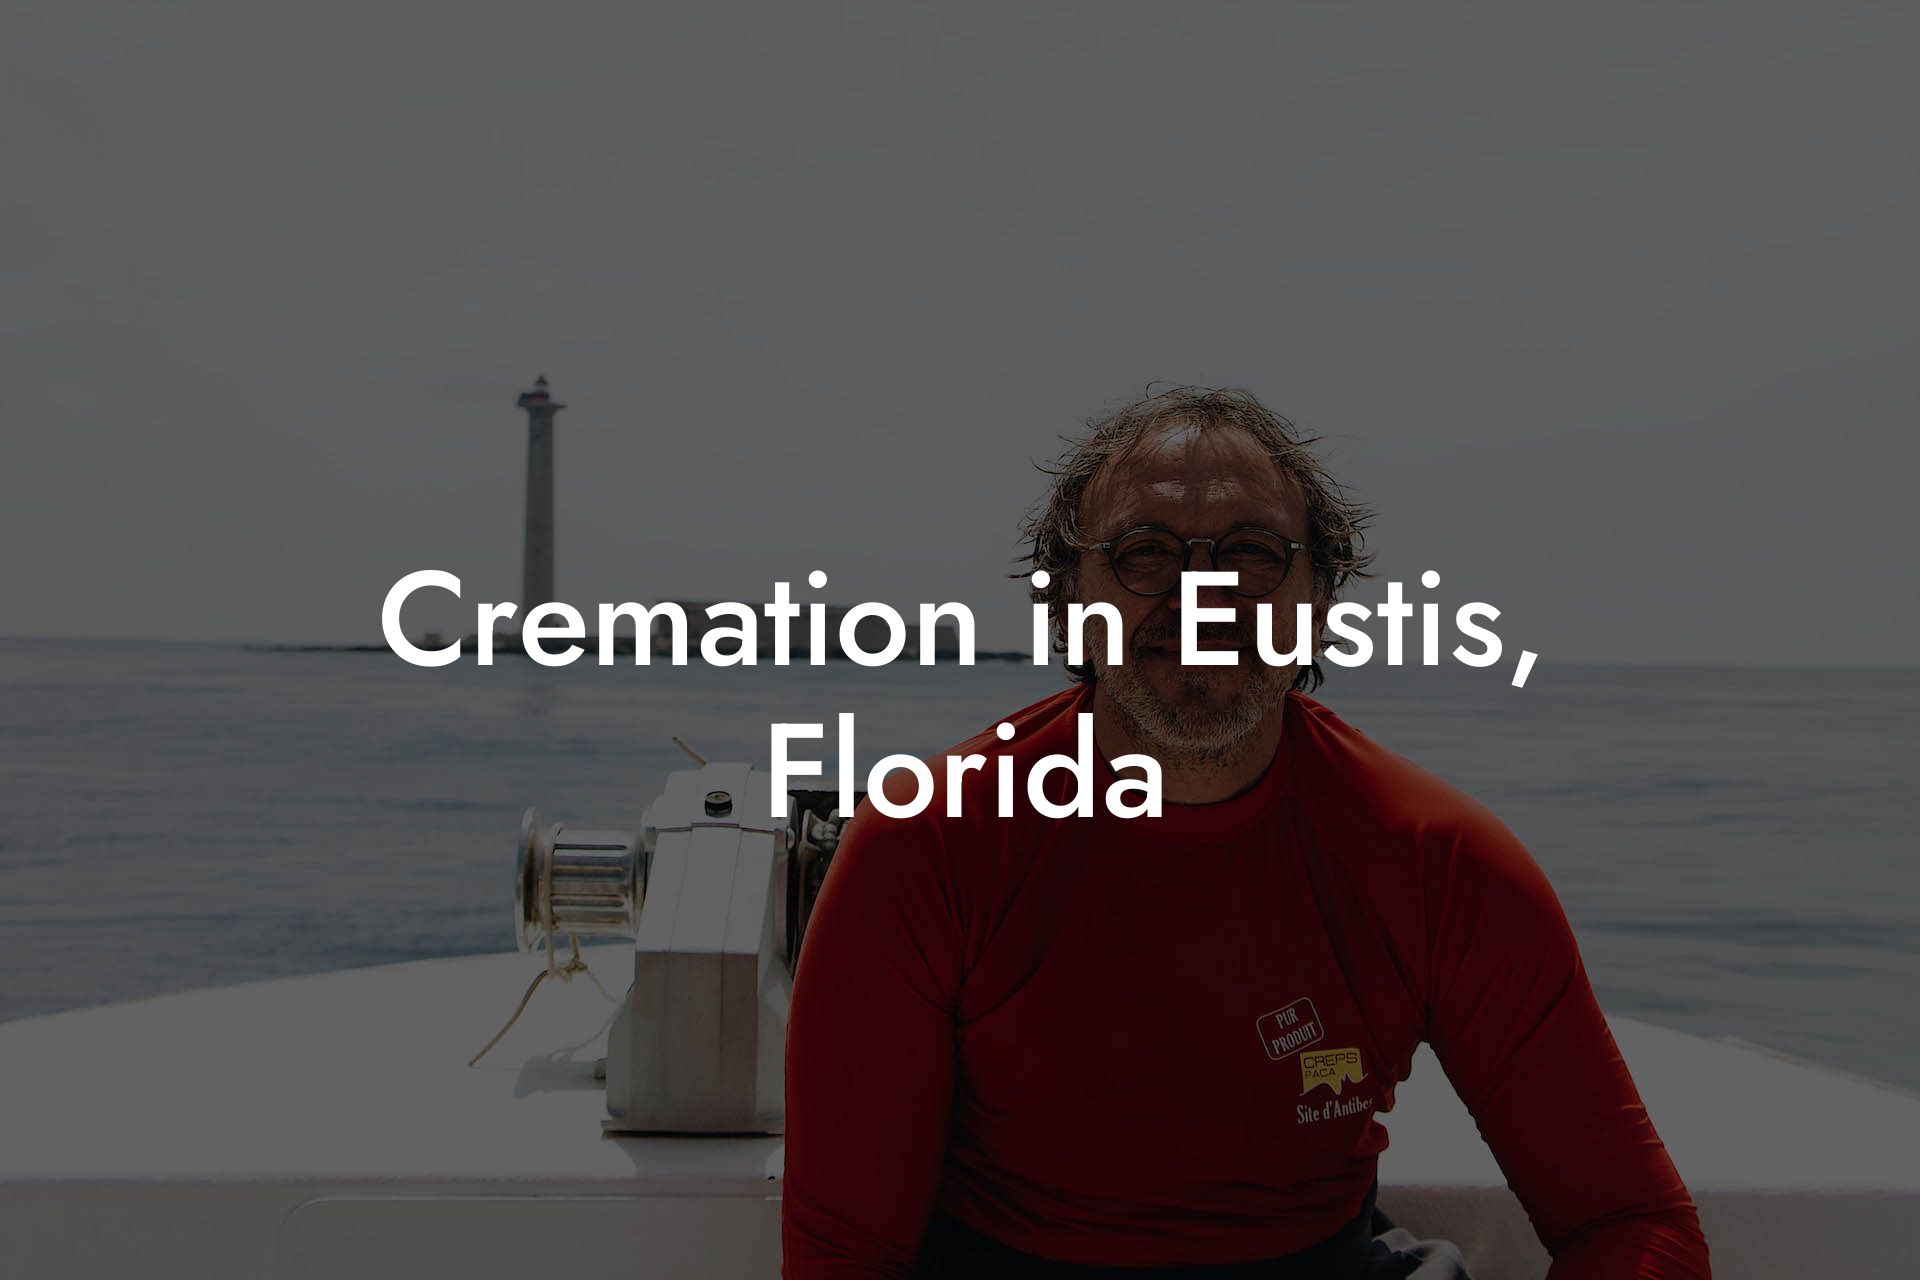 Cremation in Eustis, Florida